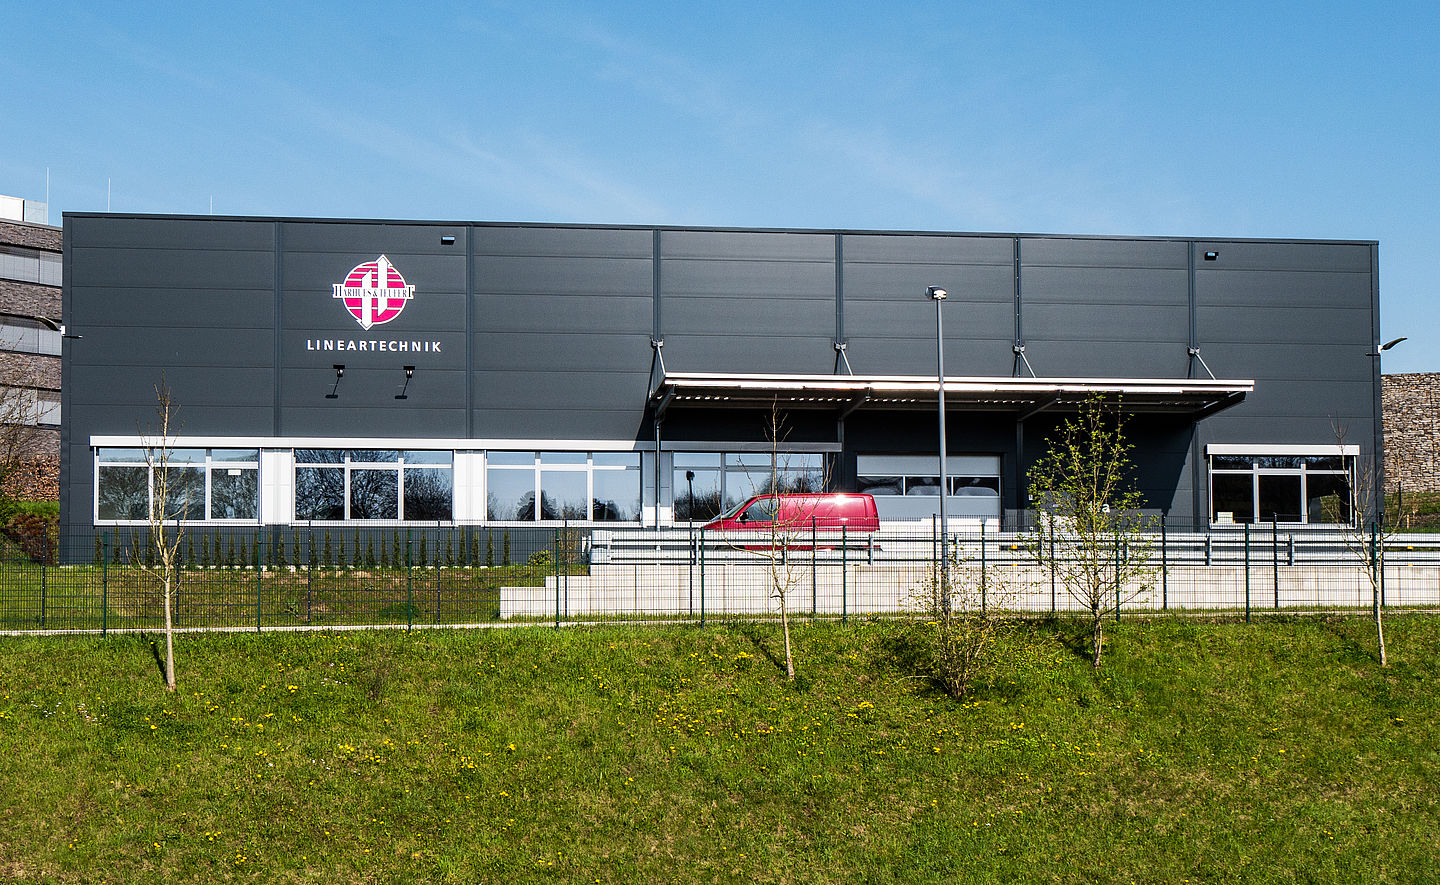 Schreiber Stahlbau baut Produktionshalle für Harhues in Velbert, horizontale Fassade, Vordach über der Anlieferung